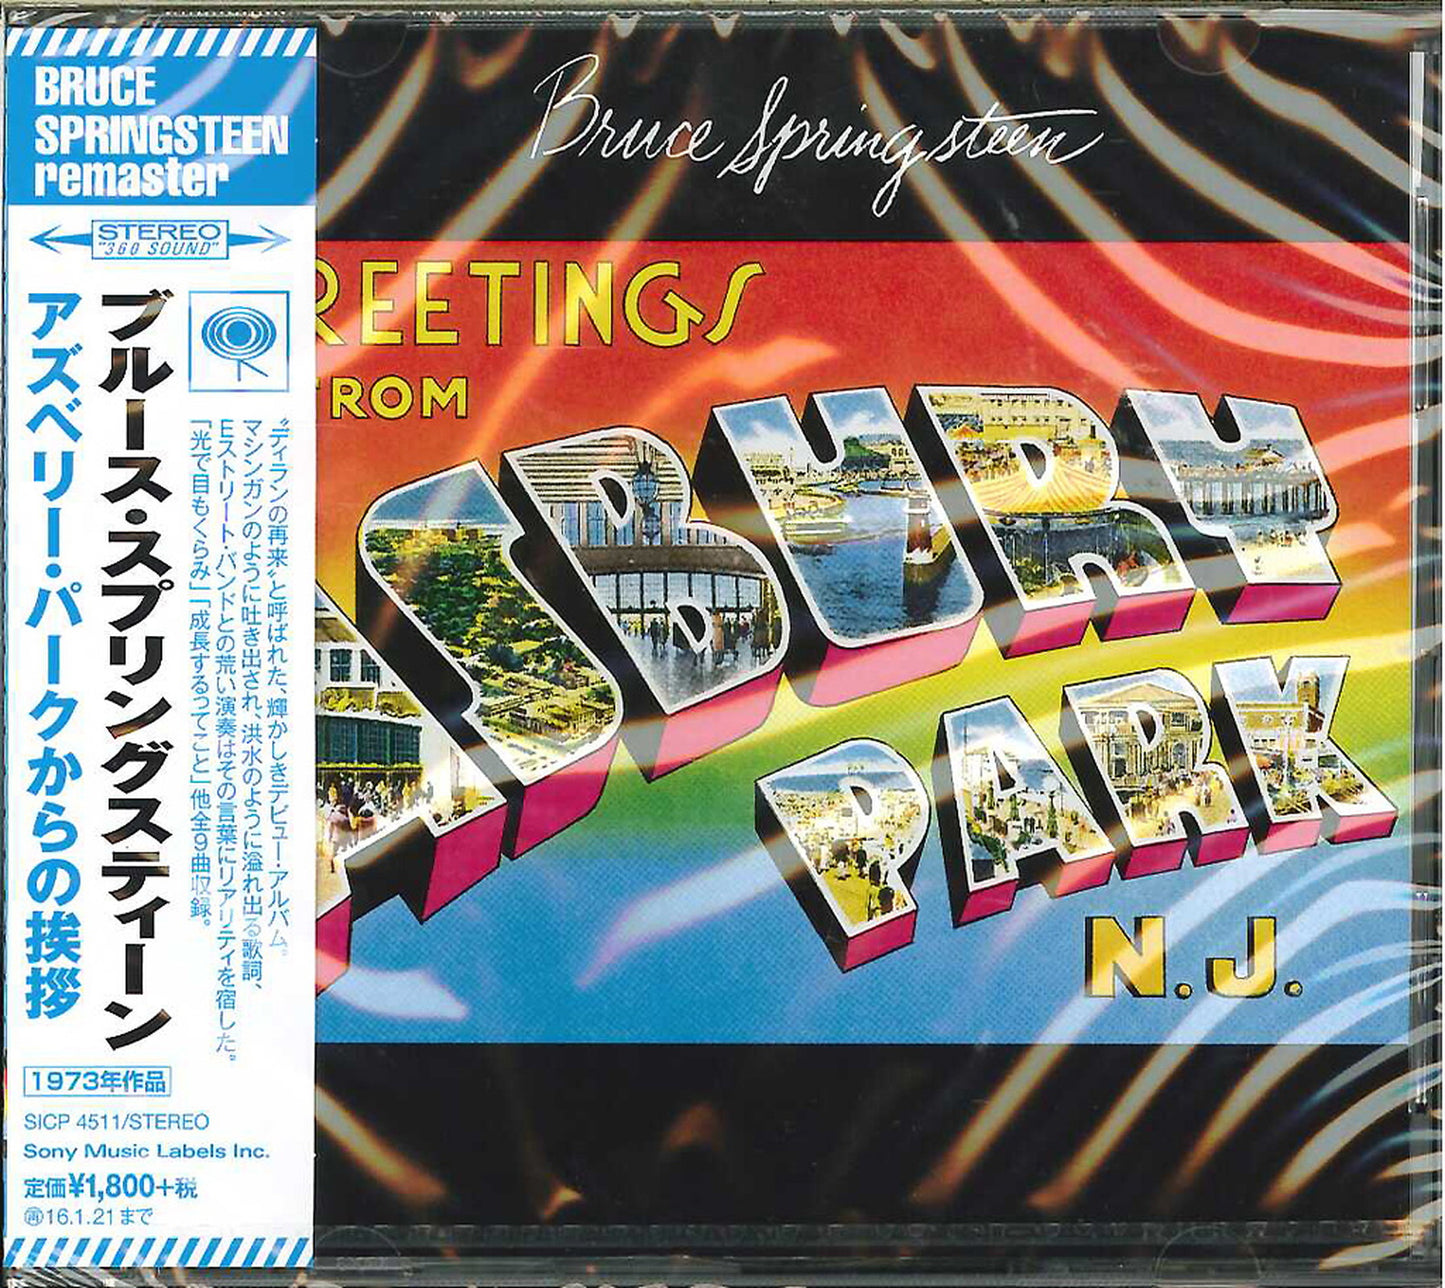 Bruce Springsteen - Greetings From Asbury Park N.J. (Remaster) - Japan CD